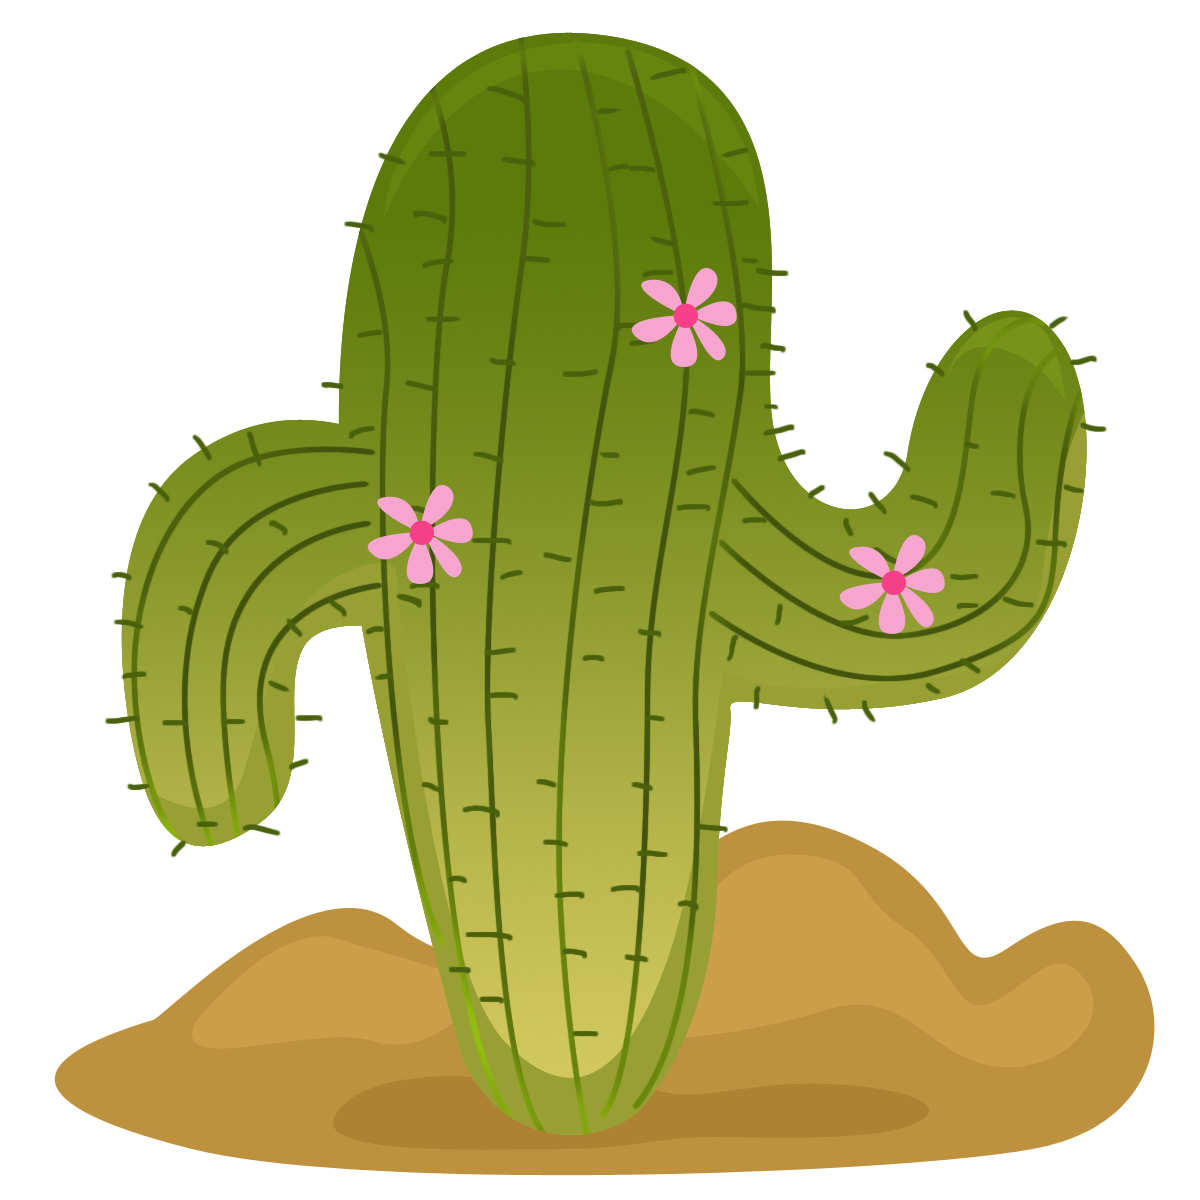 Picture #1088738 - fiesta clipart cactus. 